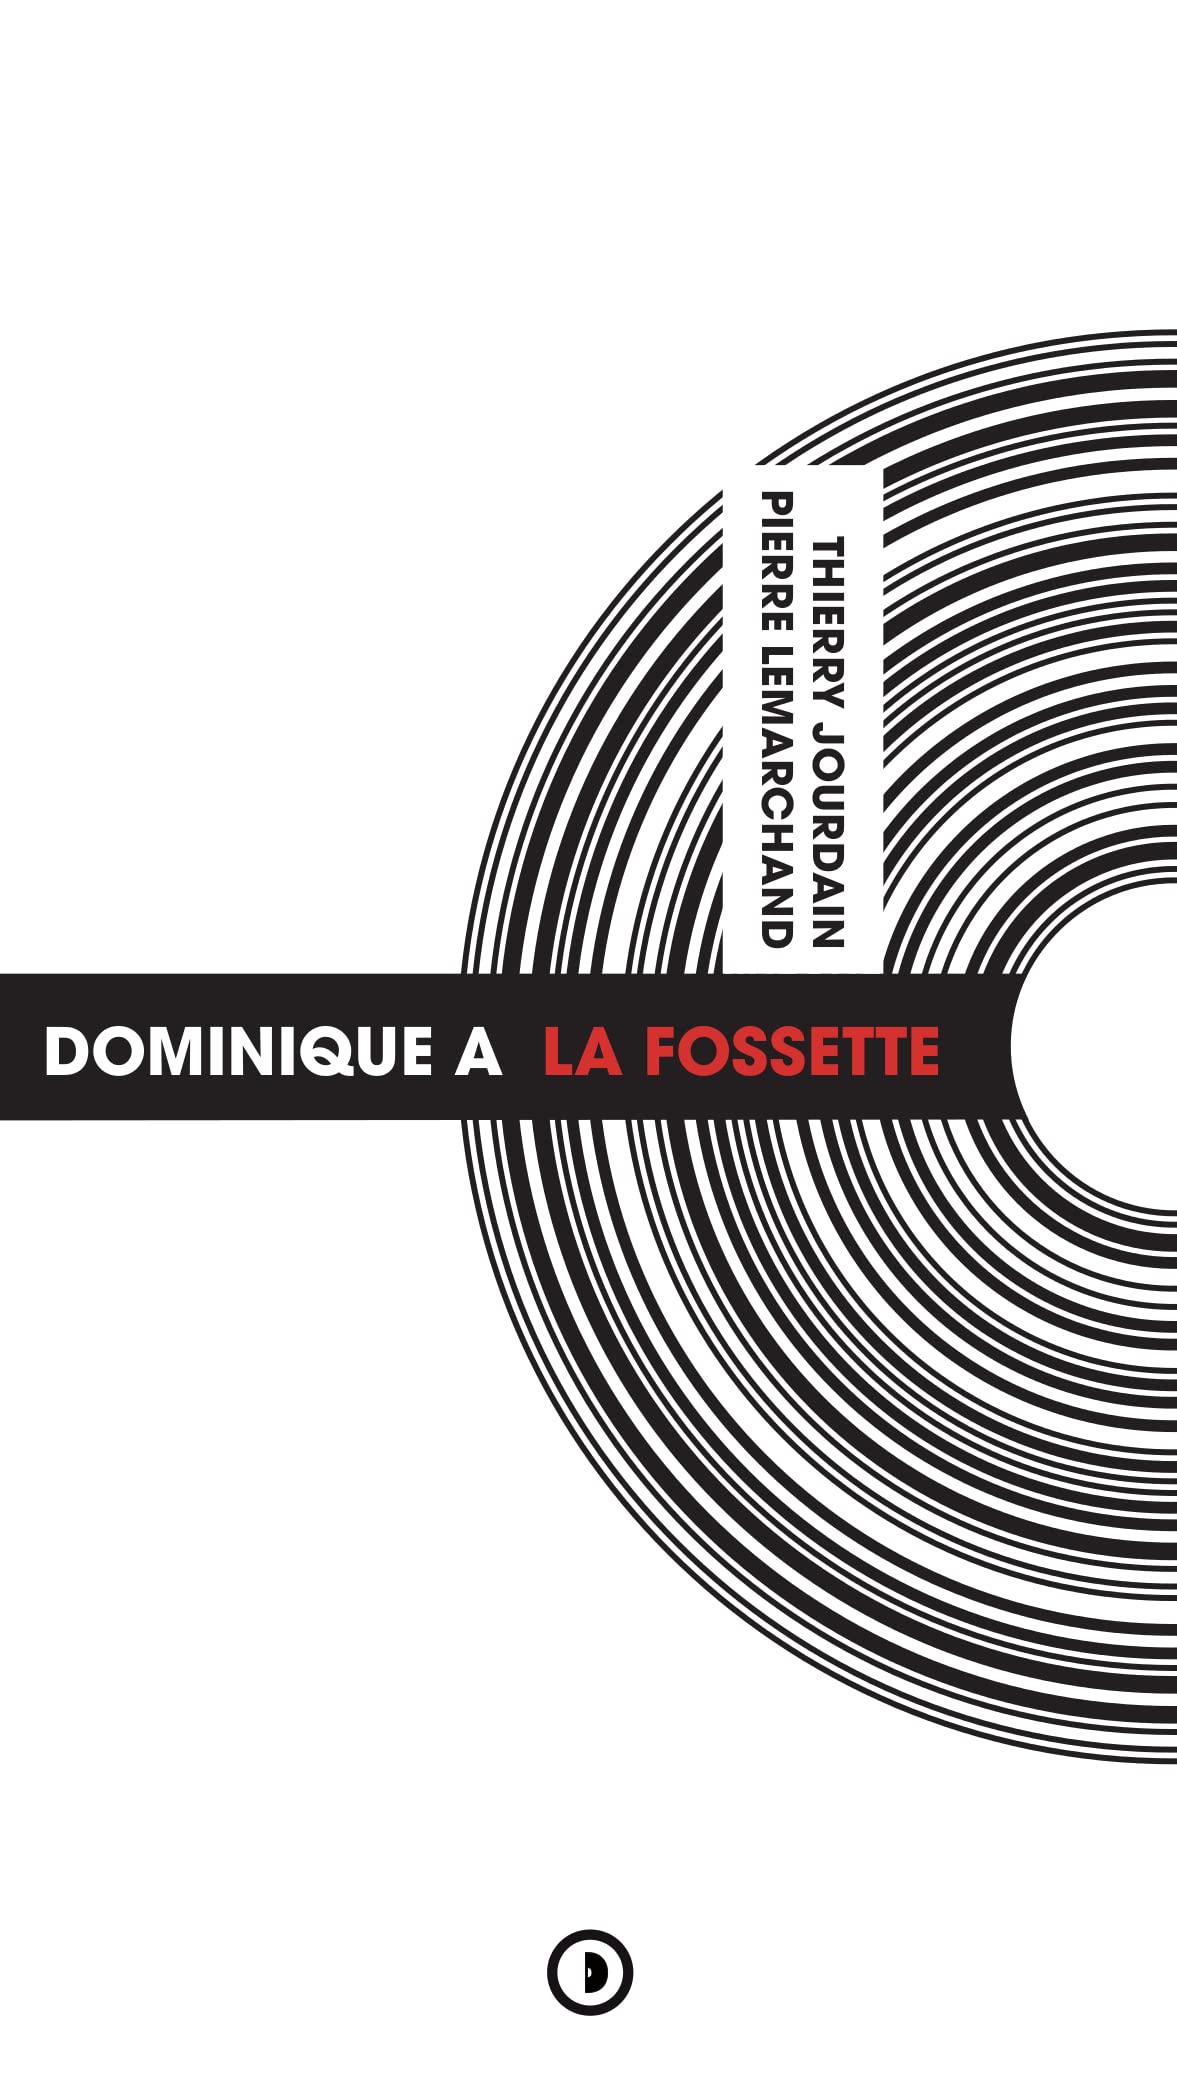 News Littéraires – Dominique A: La Fossette – Thierry Jourdain et Pierre Lemarchand